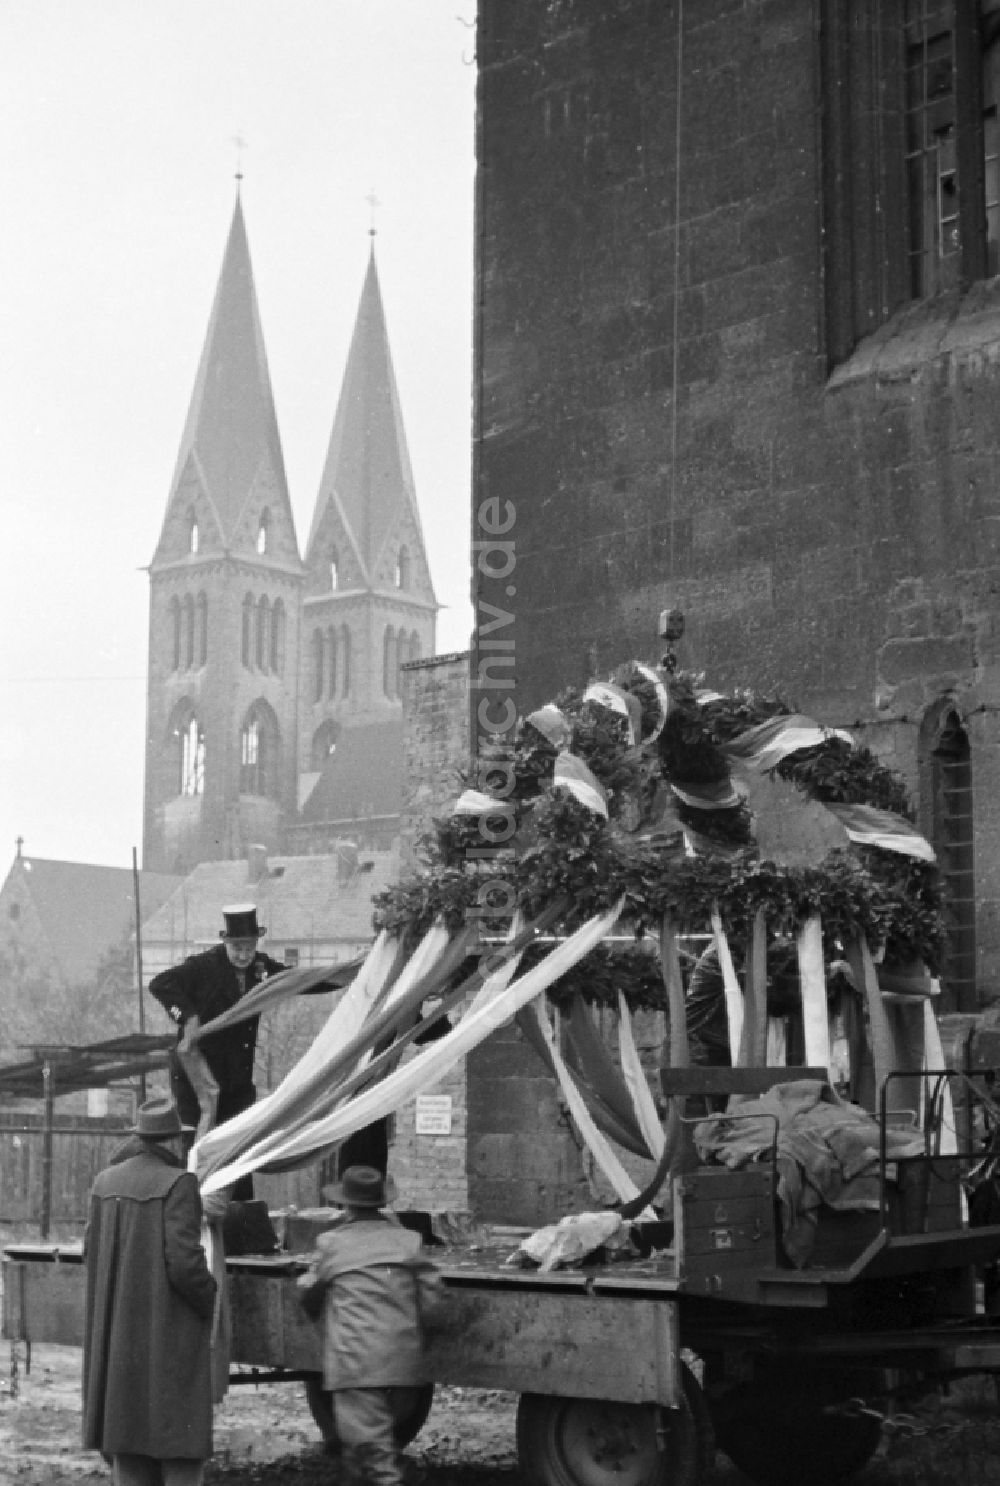 Halberstadt: Richtfest am Turm der Kirche St. Martini in Halberstadt in Sachsen-Anhalt in der DDR